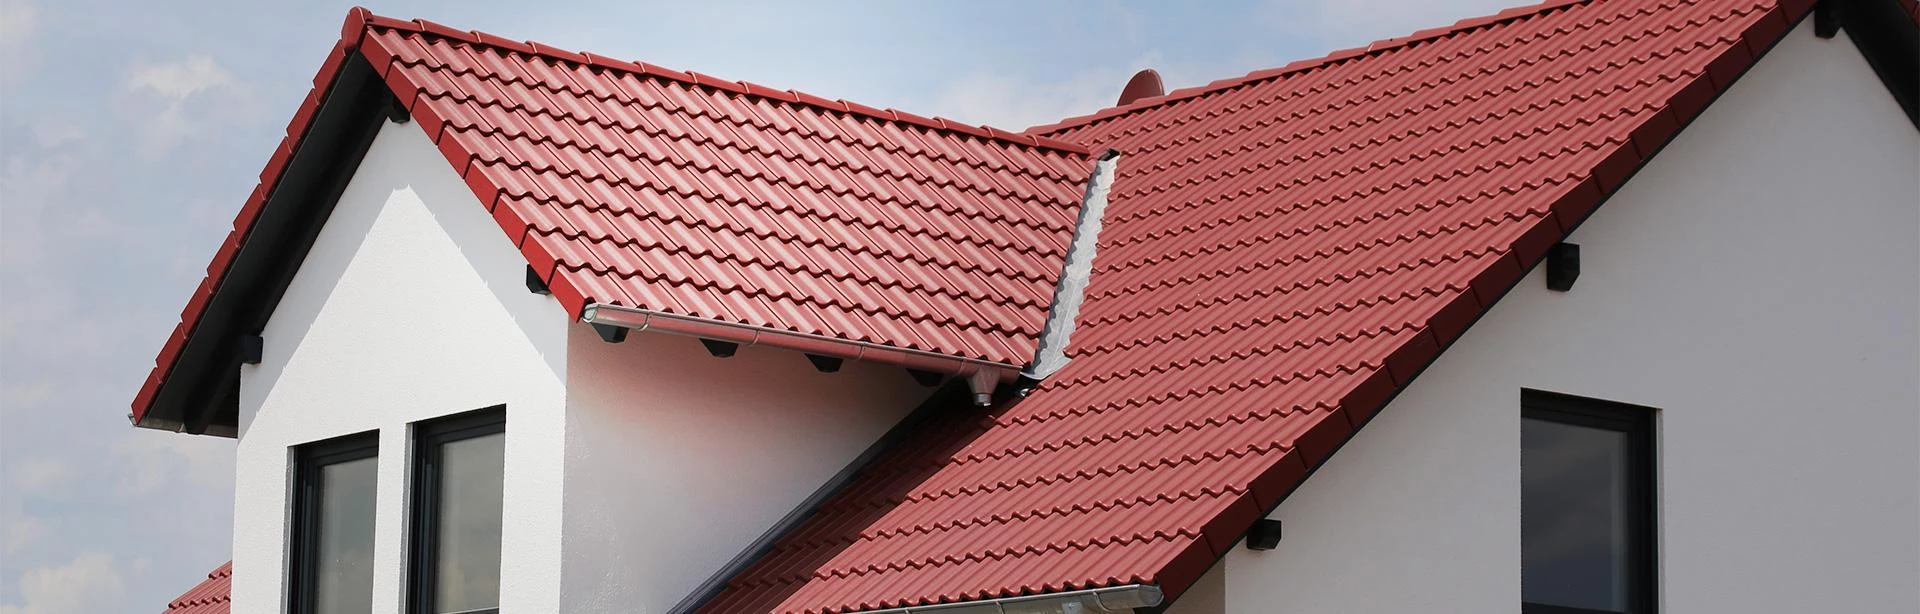 Dachy, pokrycia dachowe - usługi dekarskie | dolnośląskie